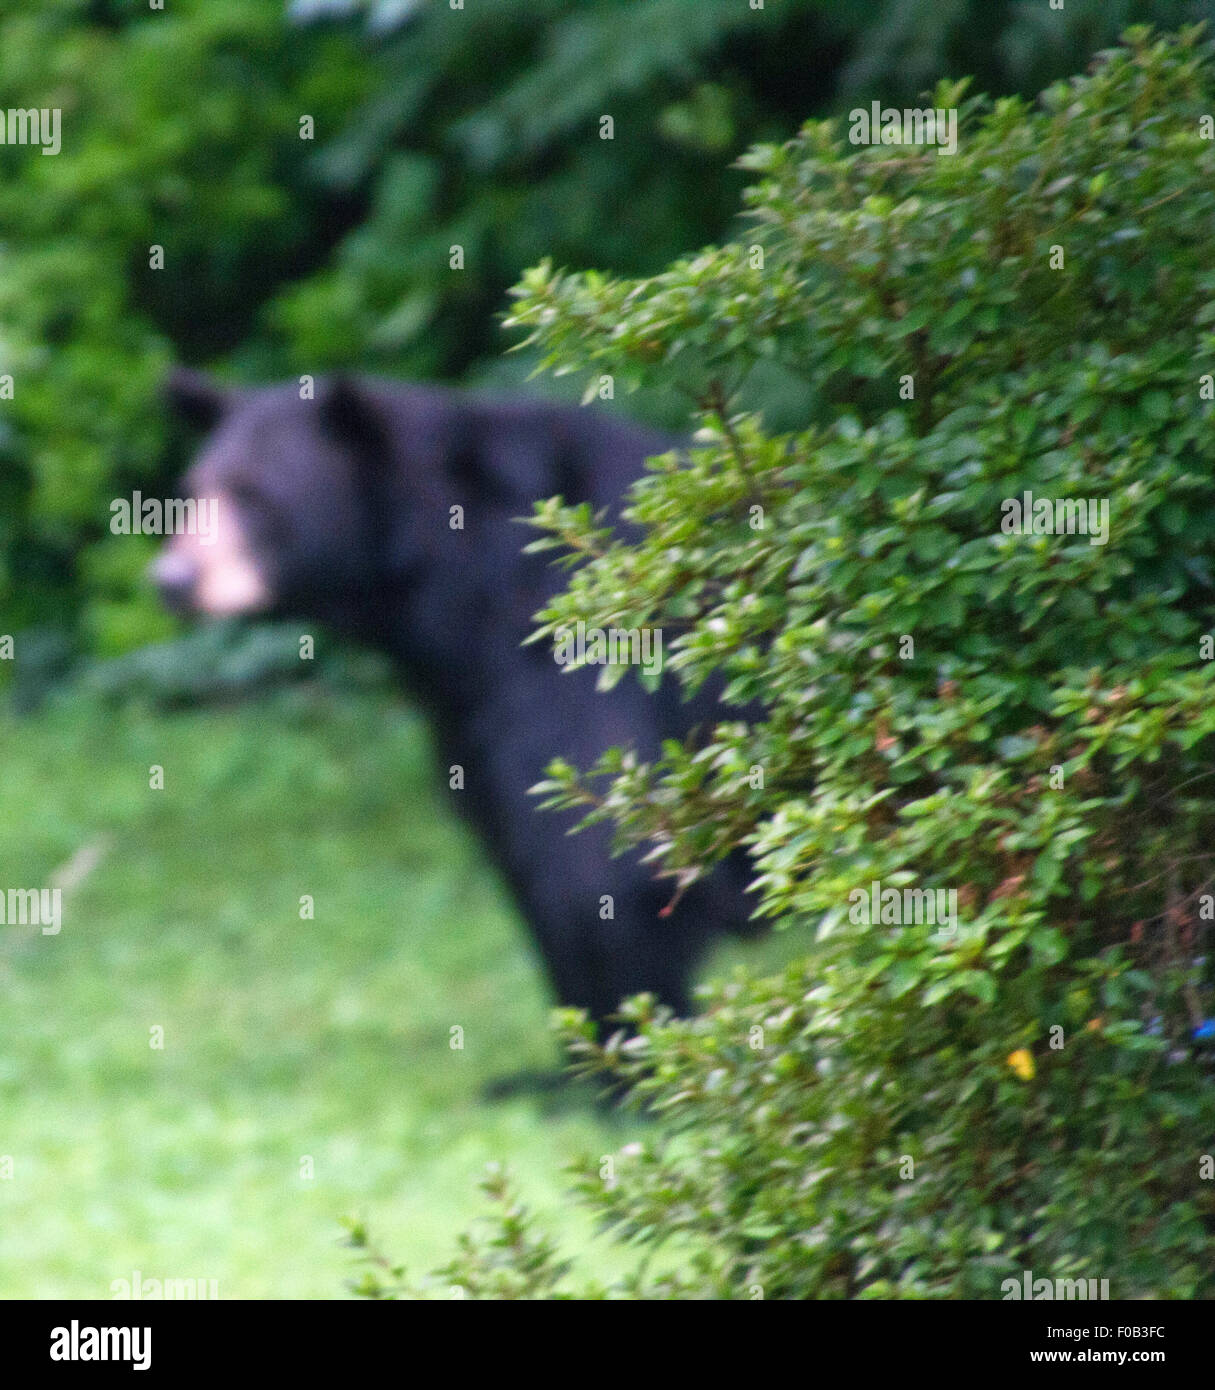 Versteckte Gefahr in Form von einem großen schwarzen Bären lauern hinter einem Gebüsch im Sommer Stockfoto